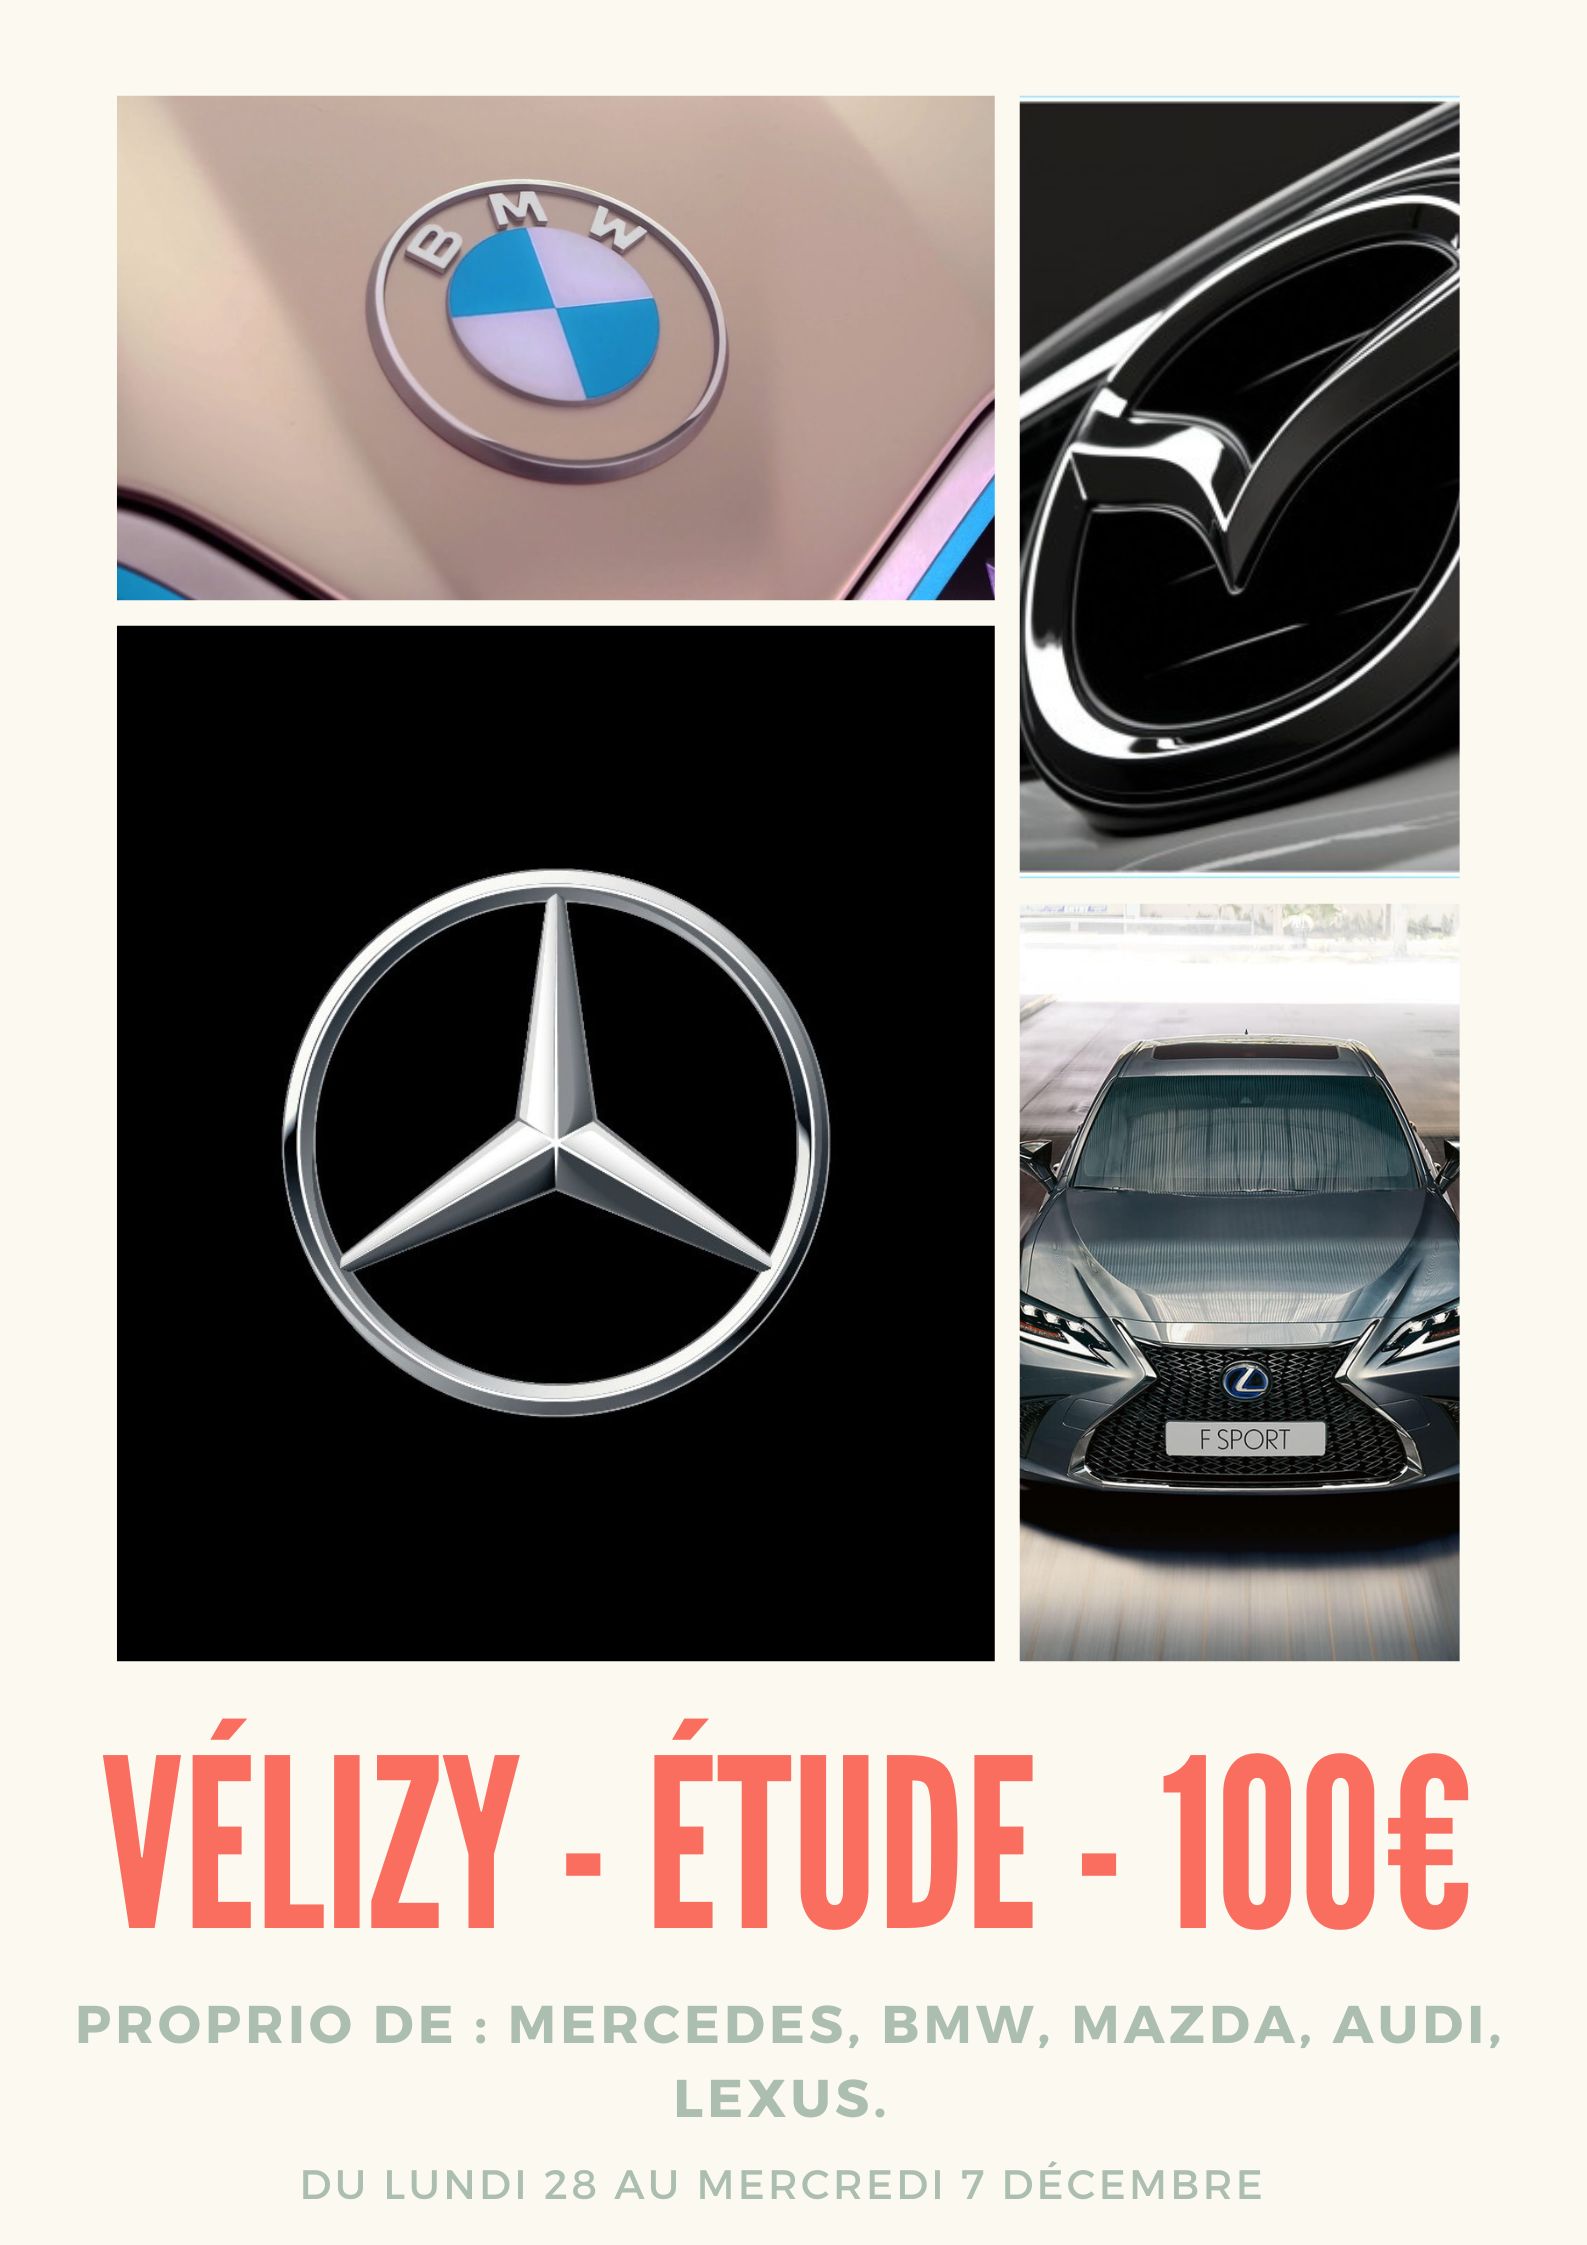 Etude dédommagée - Panel - Consommateur - 100€ - Test véhicule - Paris 